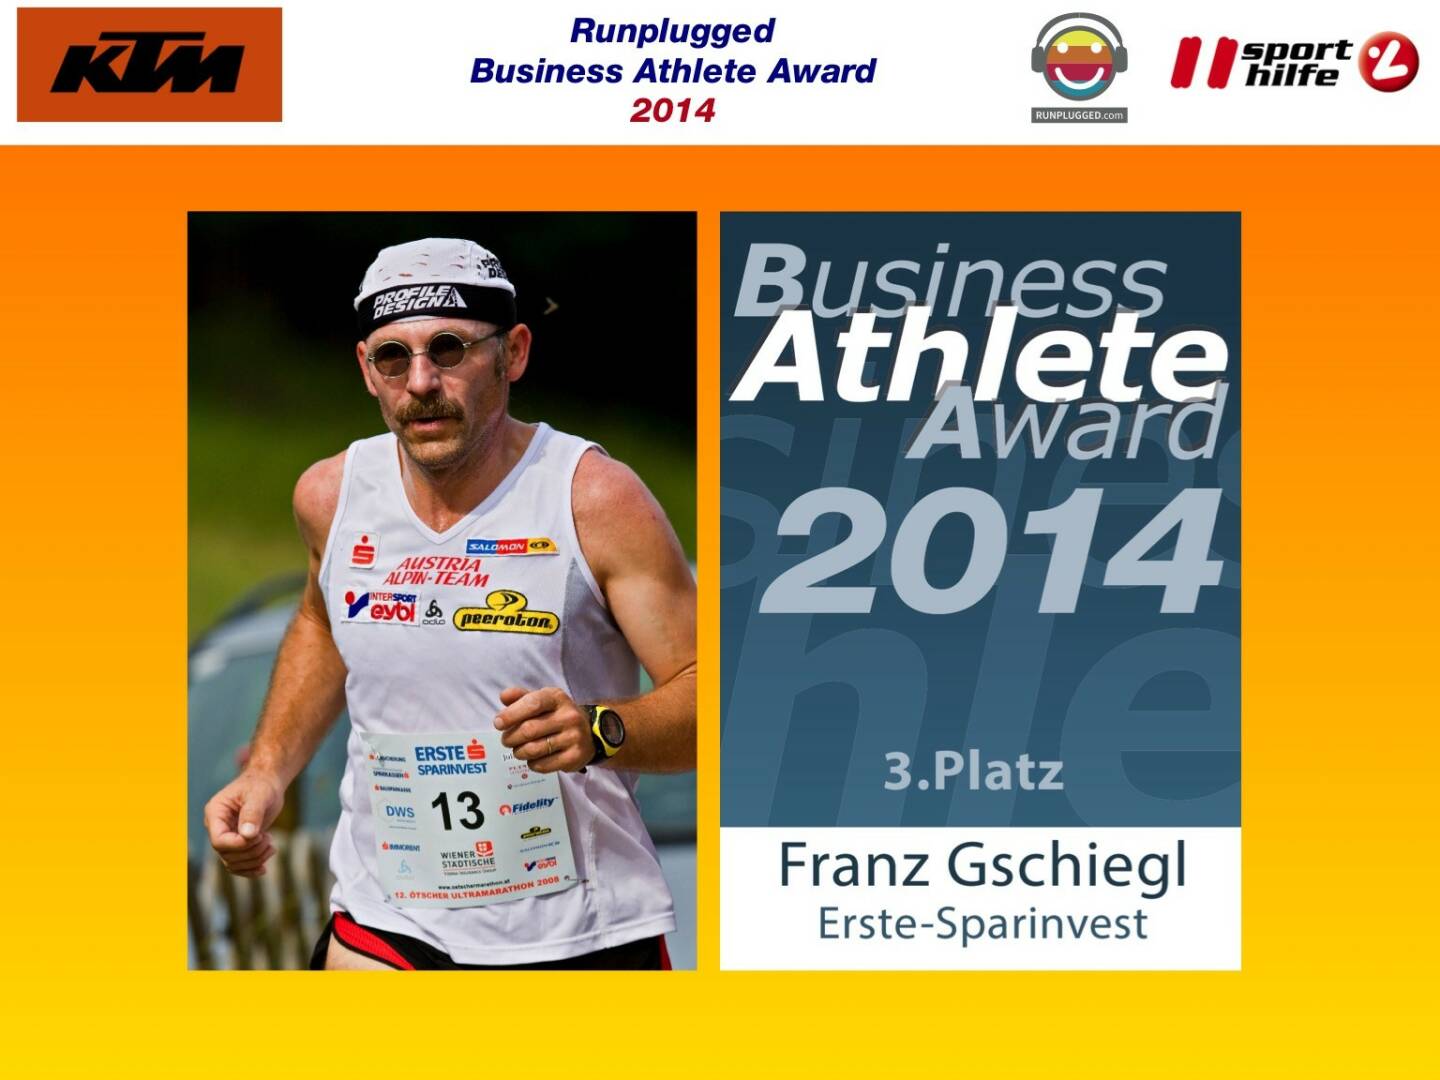 3. Platz Franz Gschiegl